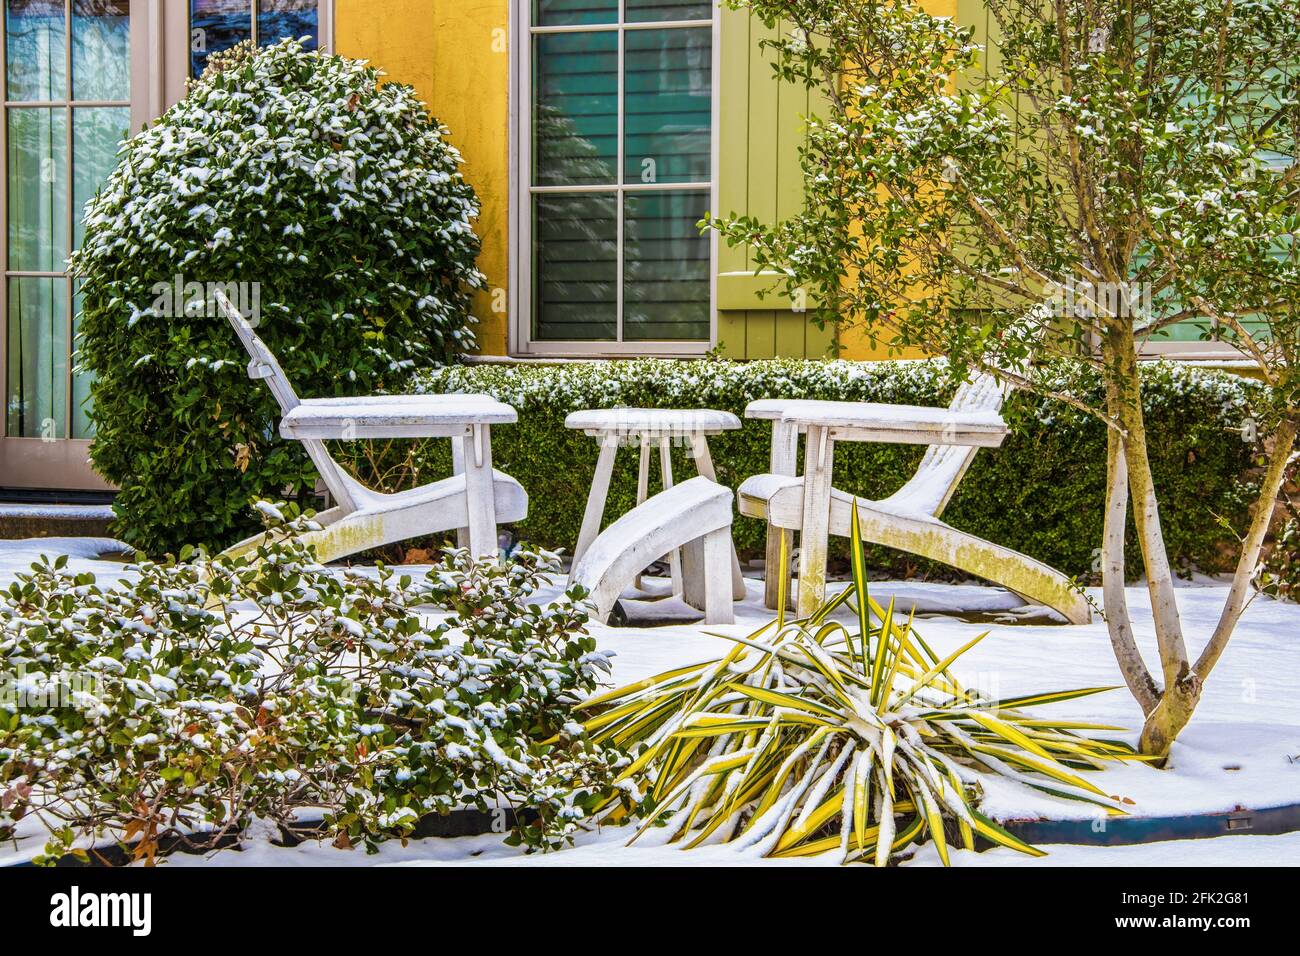 Deux chaises Adirondack blanches avec une table entre elles la neige en face d'une maison colorée et verte volets et arbustes autour d'eux Banque D'Images